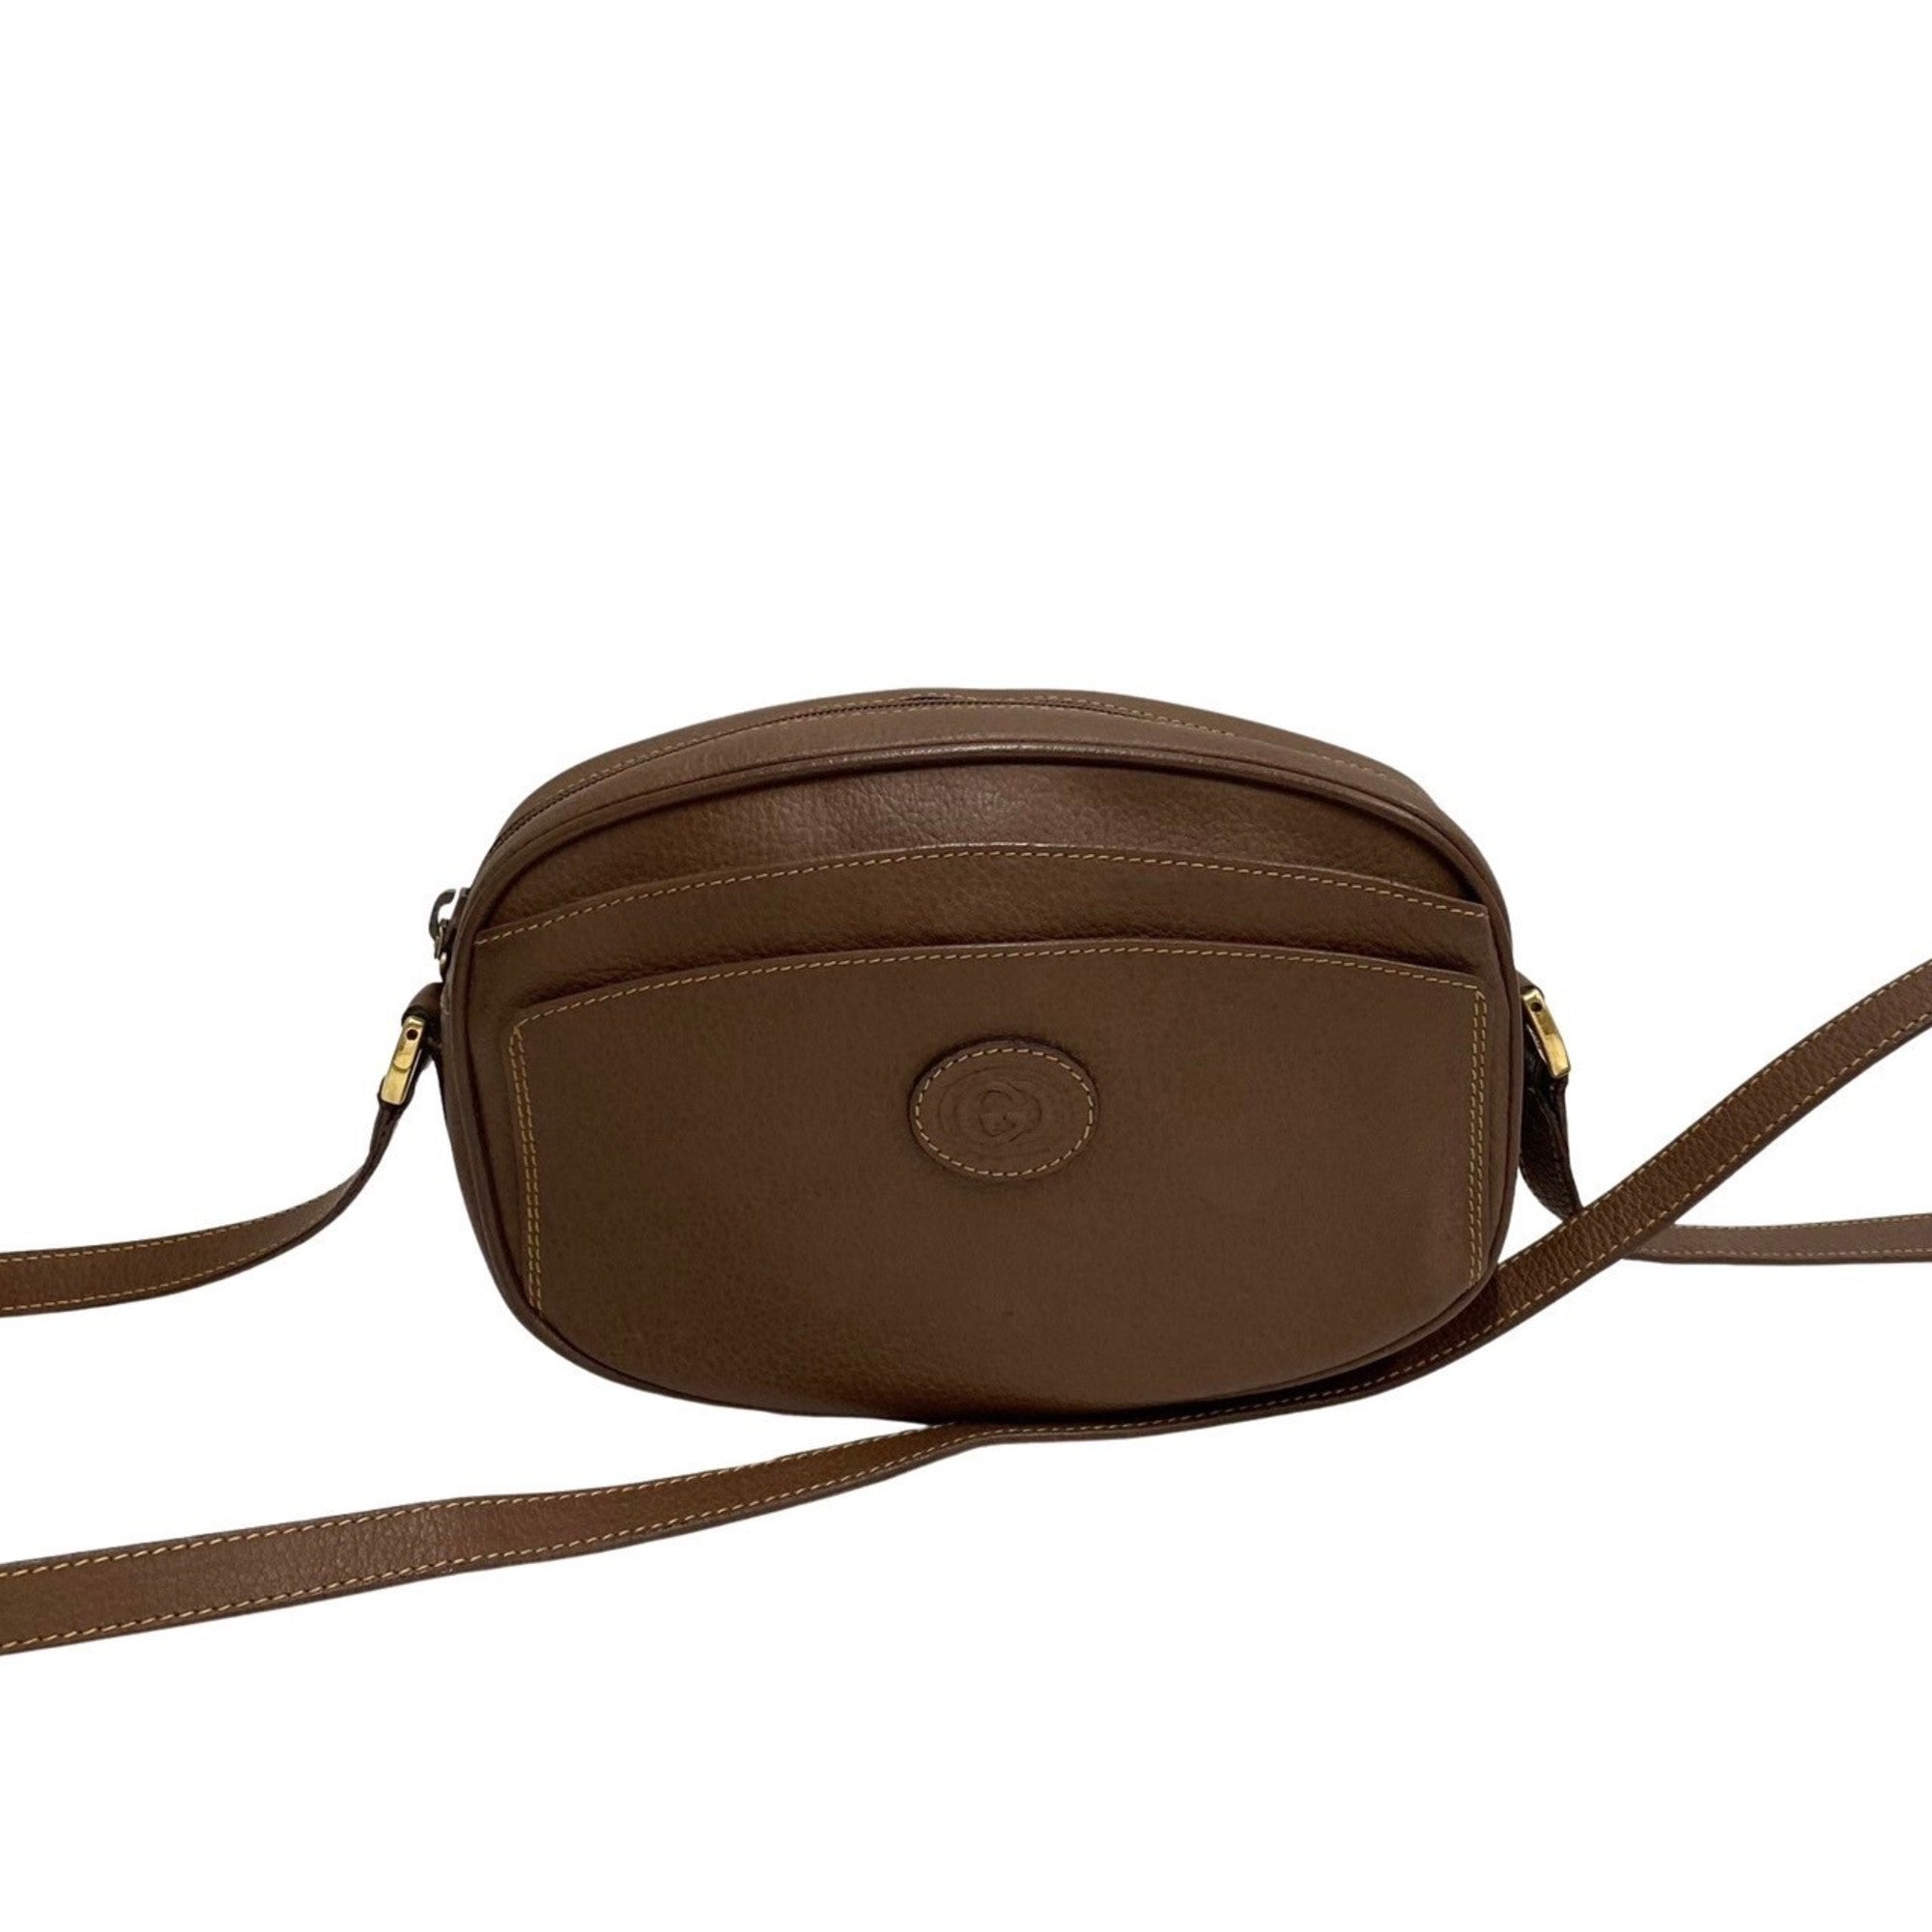 Fashion designer handbag shoulder … curated on LTK